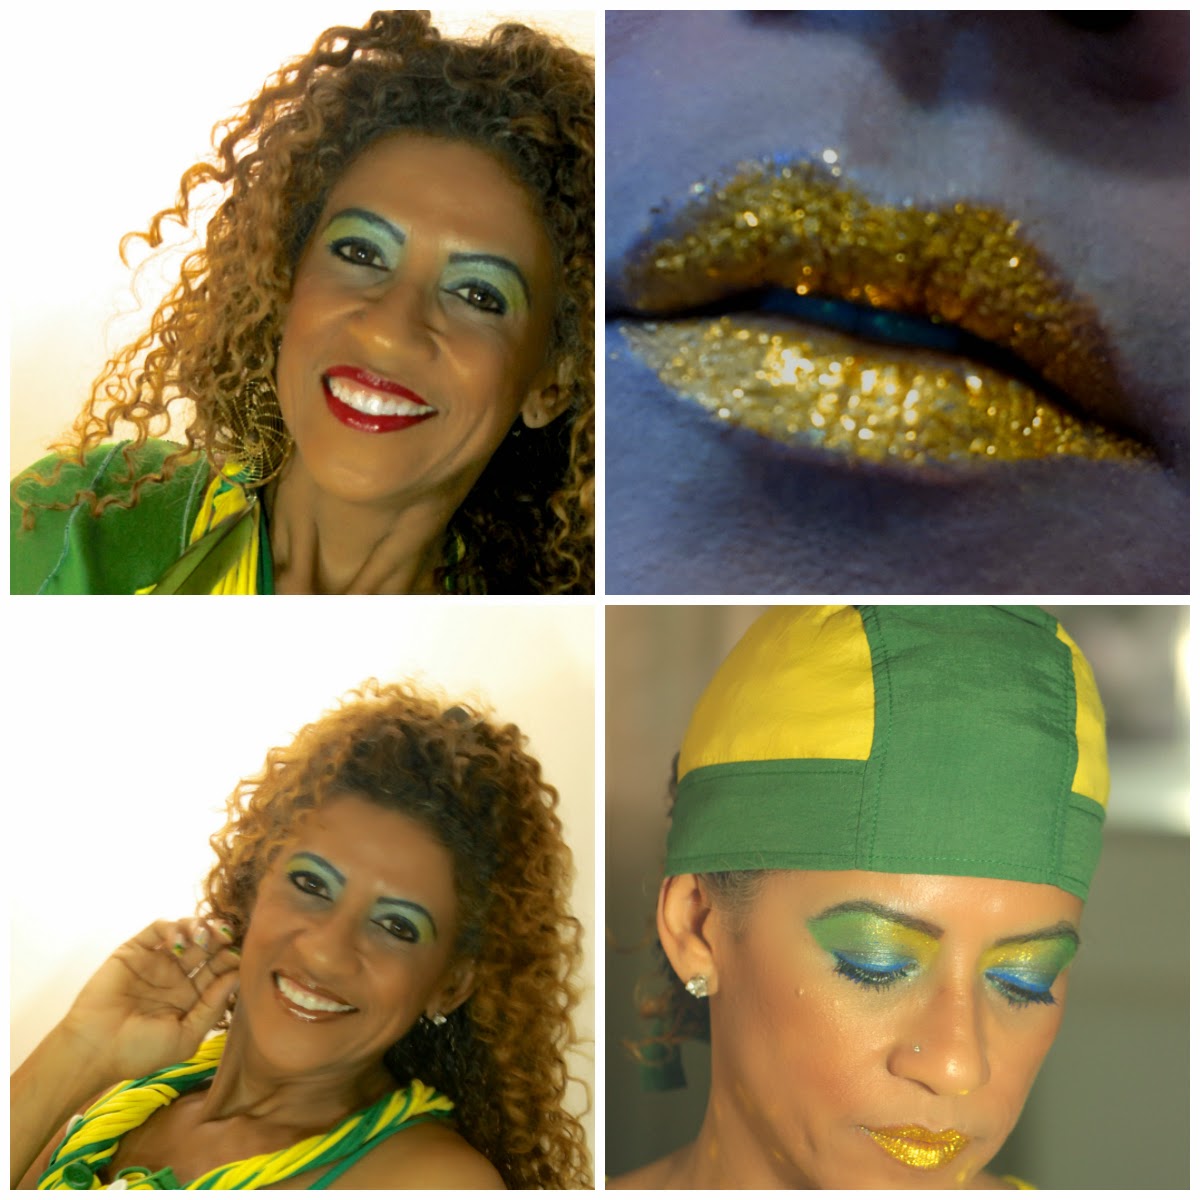 look+olimpiadas+do+brazil+por+Gracyjony+nascimento+www.mulatadourada.com.br